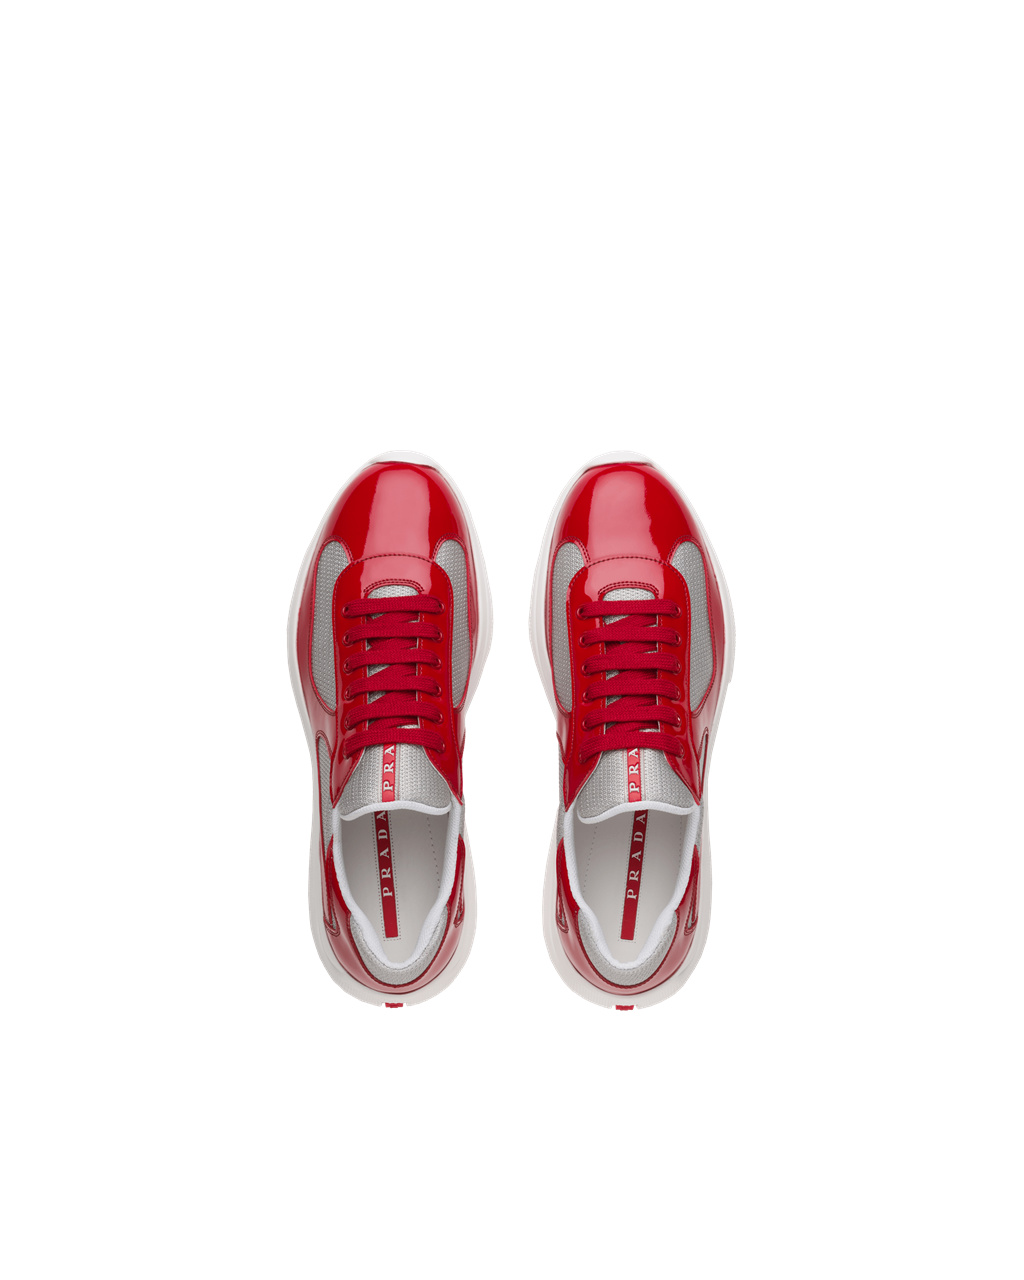 Prada Sneakers On Sales - Prada America's Cup Sneakers Mens Red / Silver